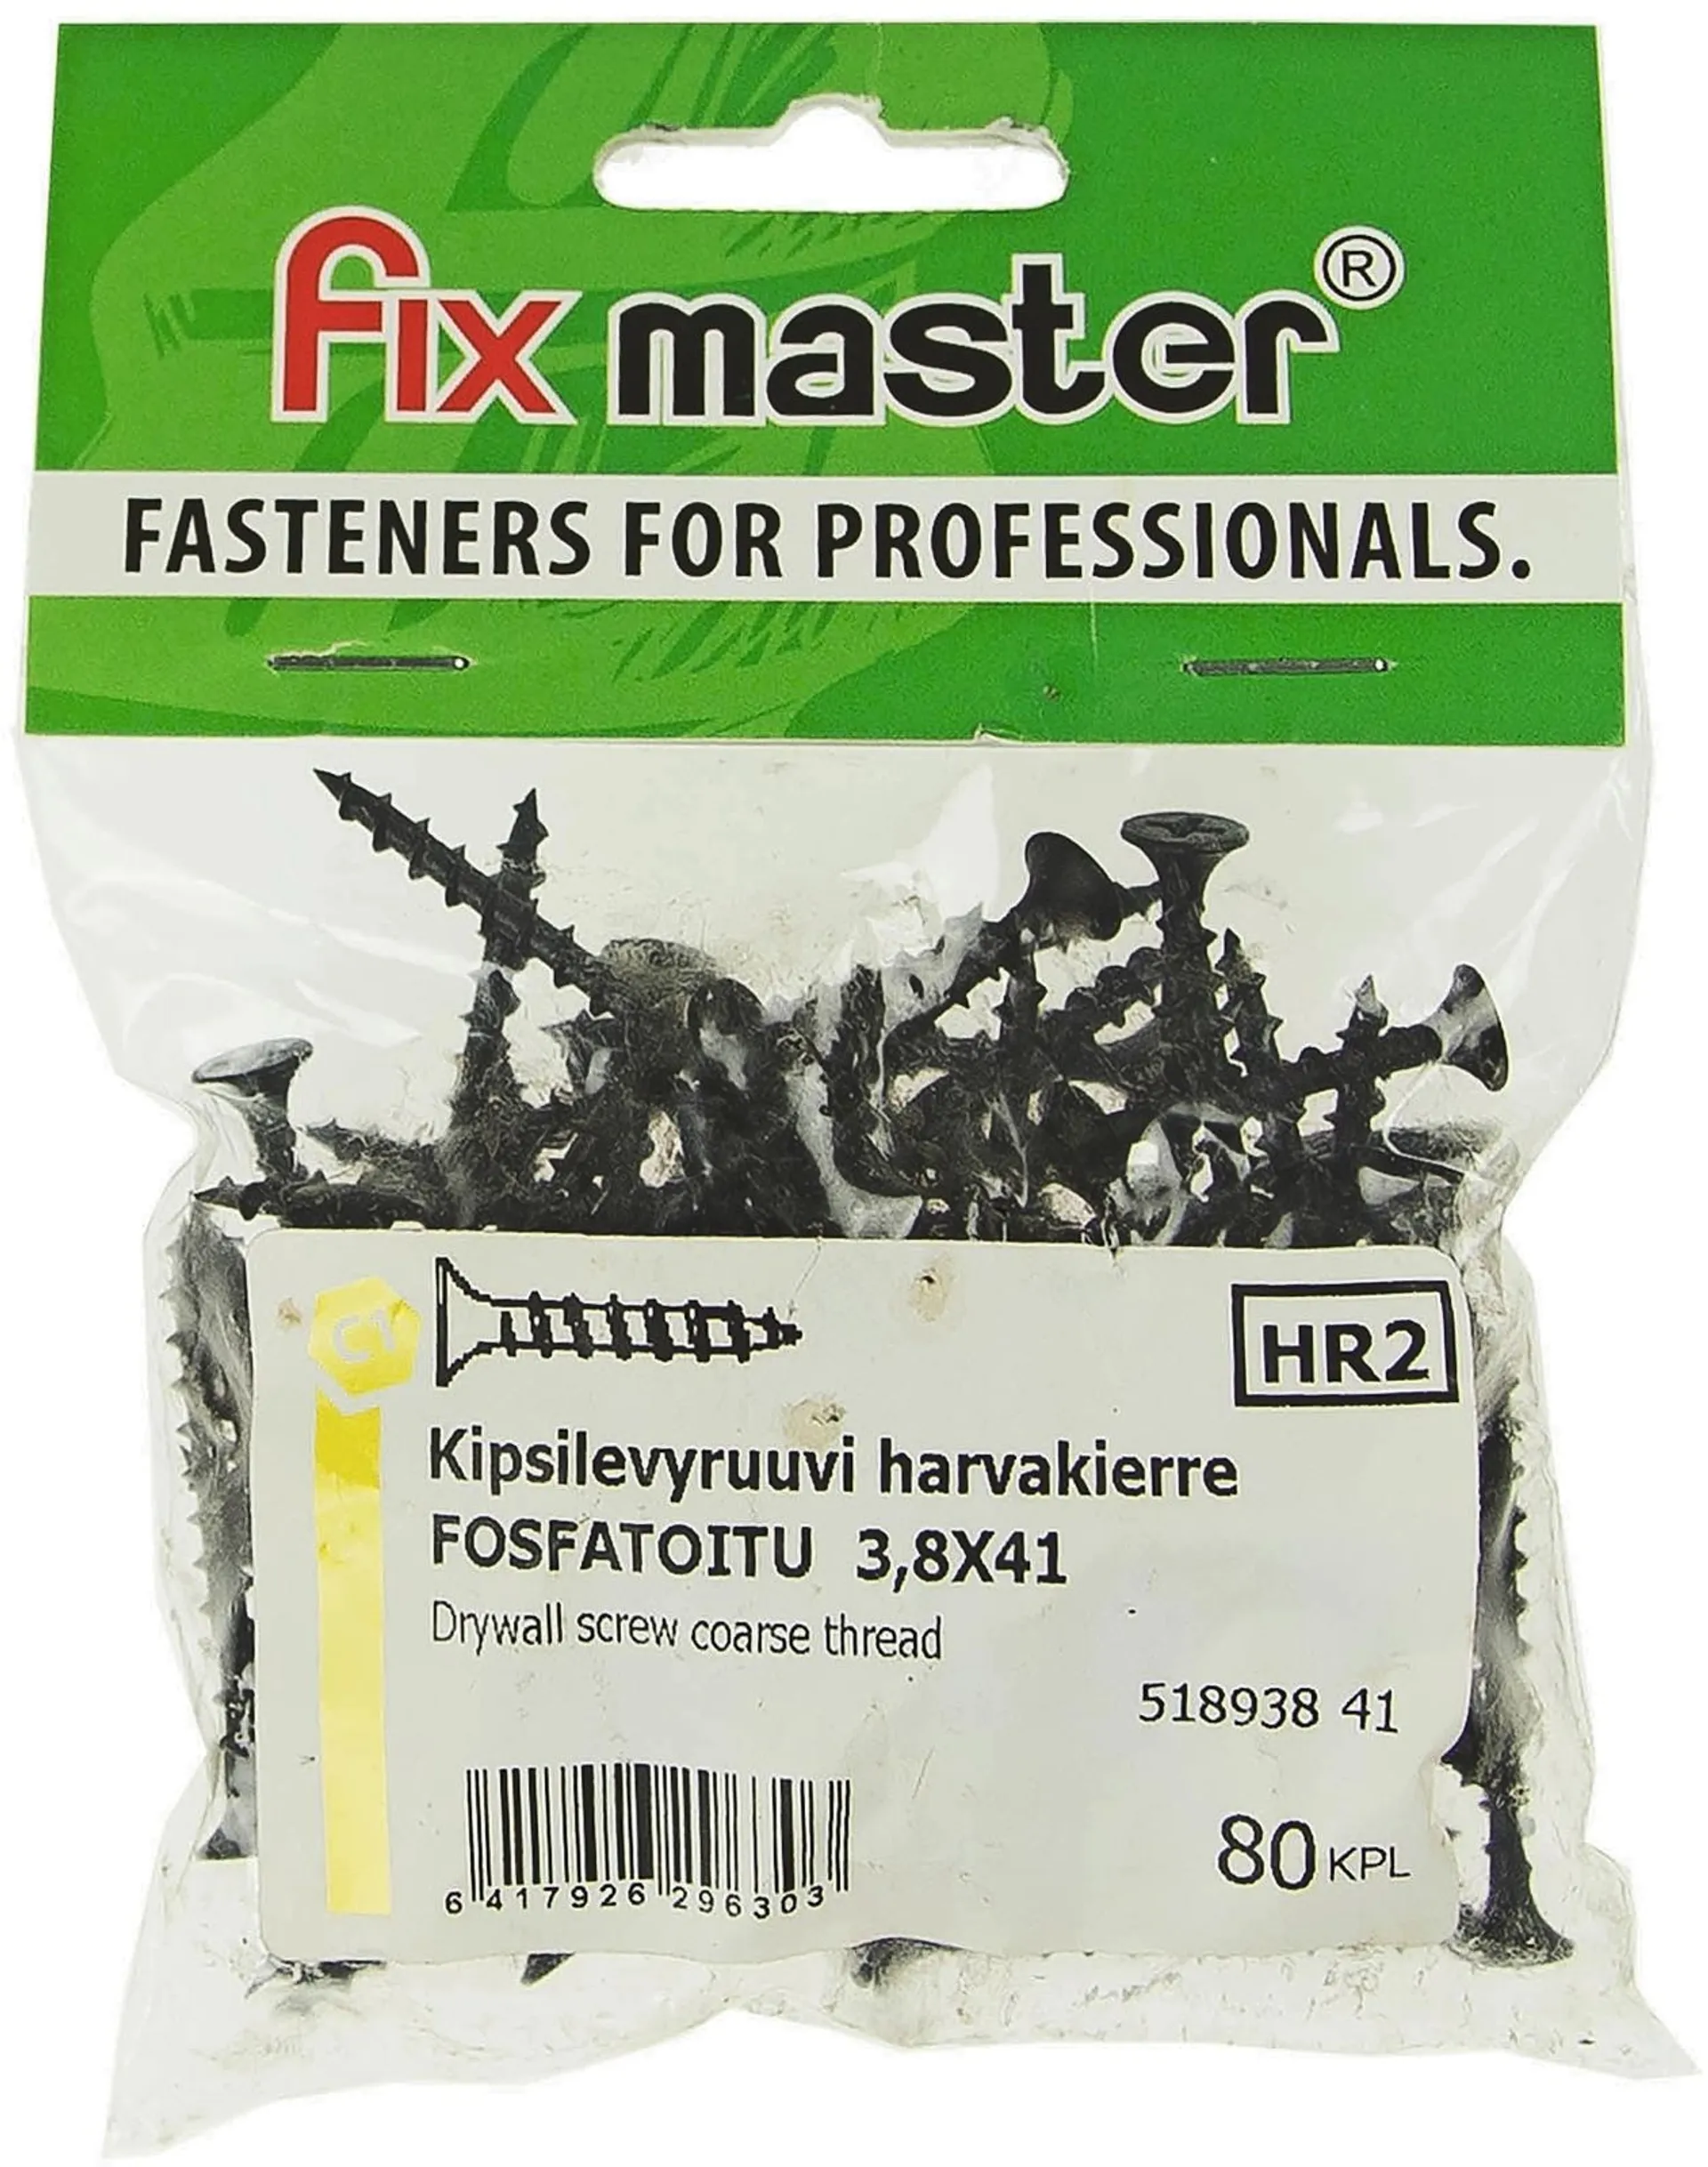 Fix Master kipsilevyruuvi harvakierre 3,8X41 fosfatoitu 80kpl